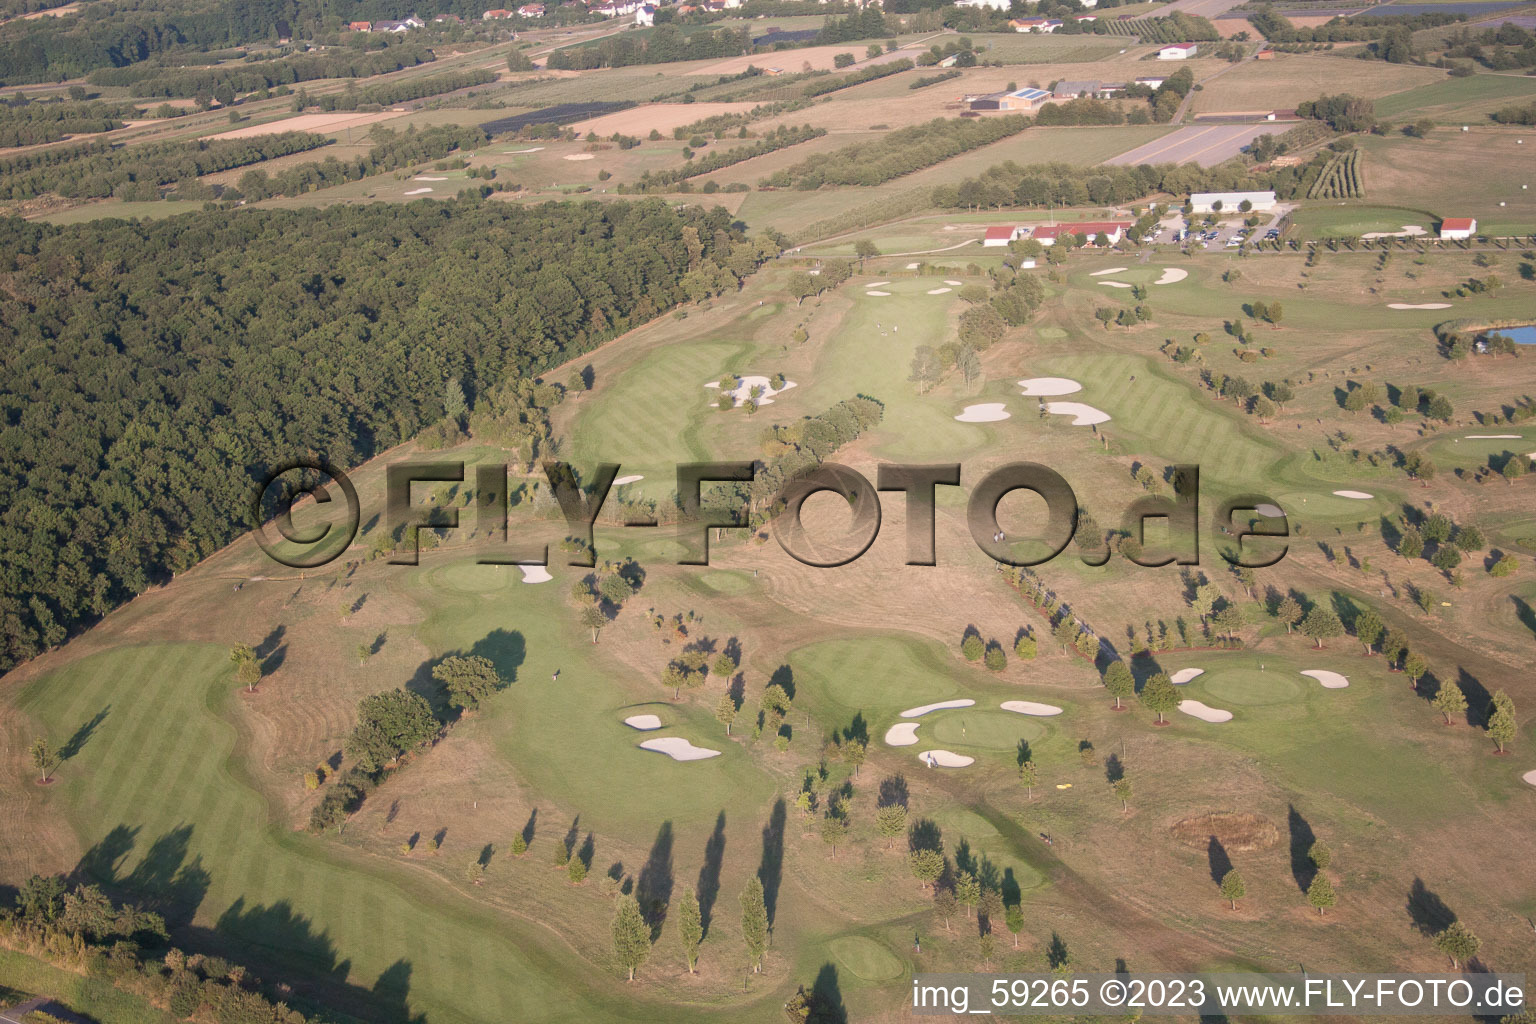 Golfclub Urloffen in Appenweier im Bundesland Baden-Württemberg, Deutschland aus der Drohnenperspektive